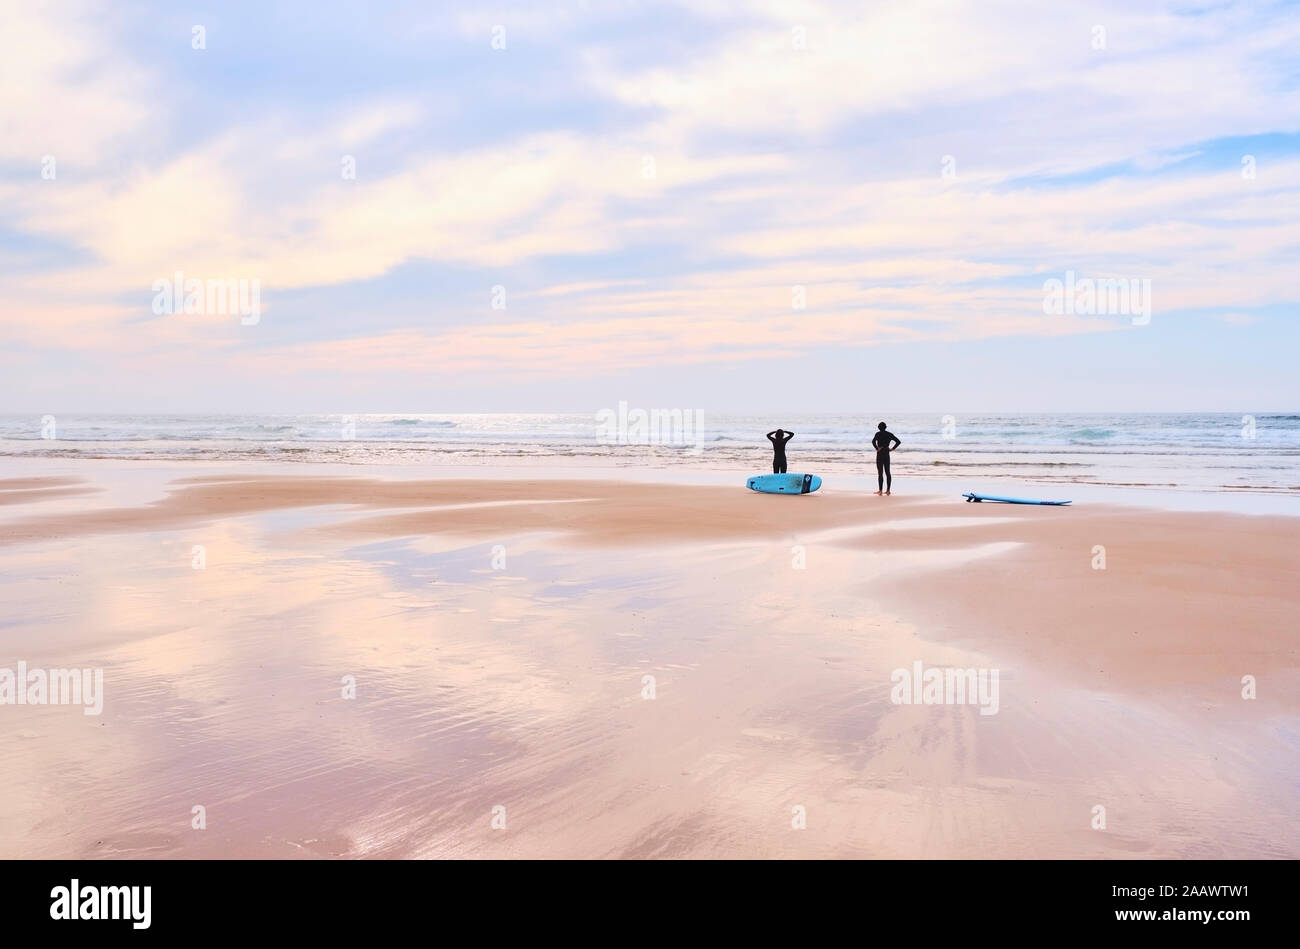 Portugal, Algarve, siluetas de dos surfistas en la playa de Cordoama permanente Foto de stock